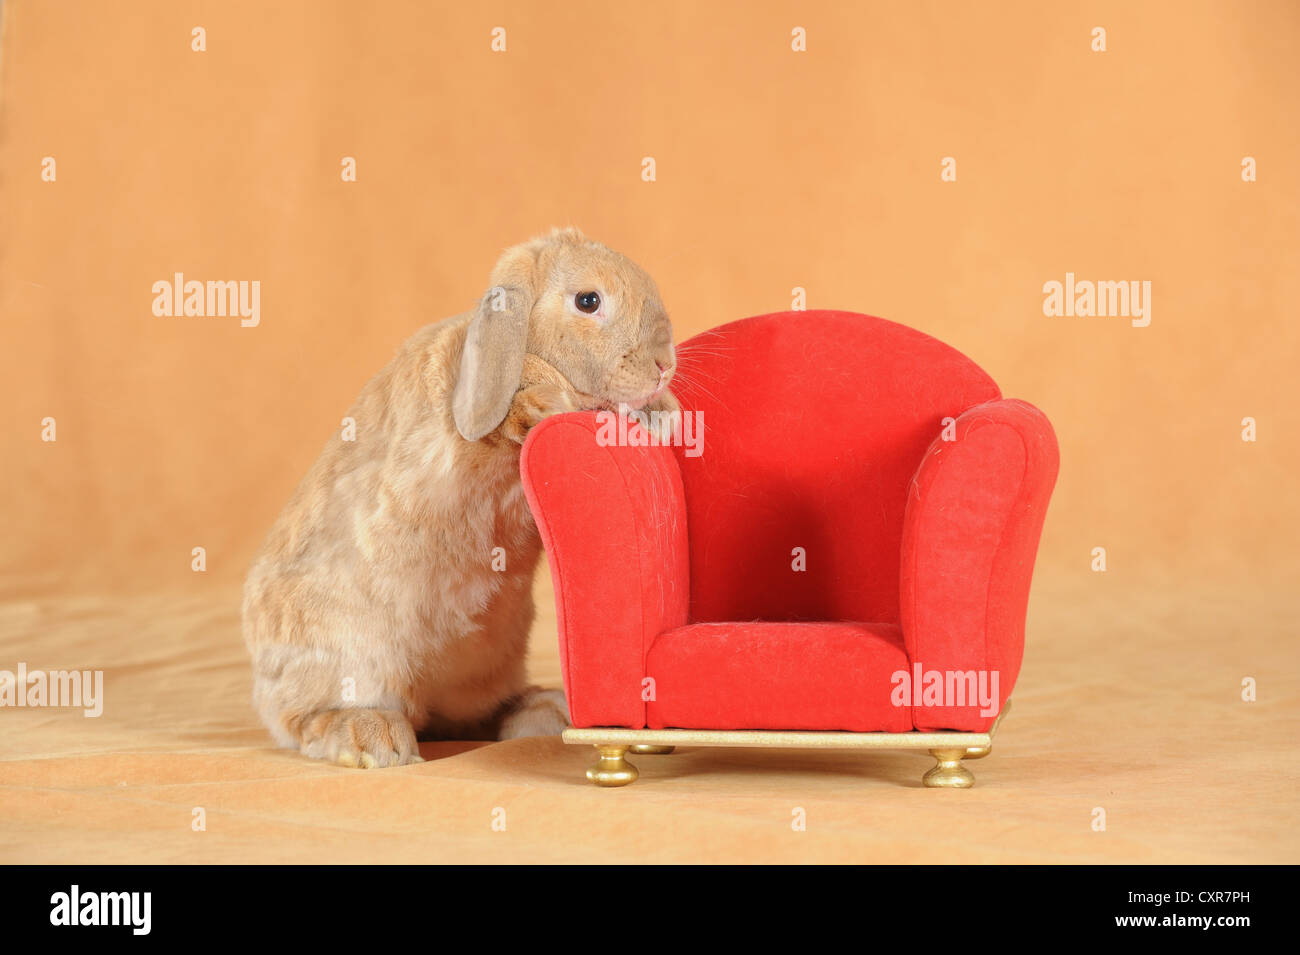 Naine brune Anglais Lop lapin debout à côté d'un mini-président rouge Banque D'Images